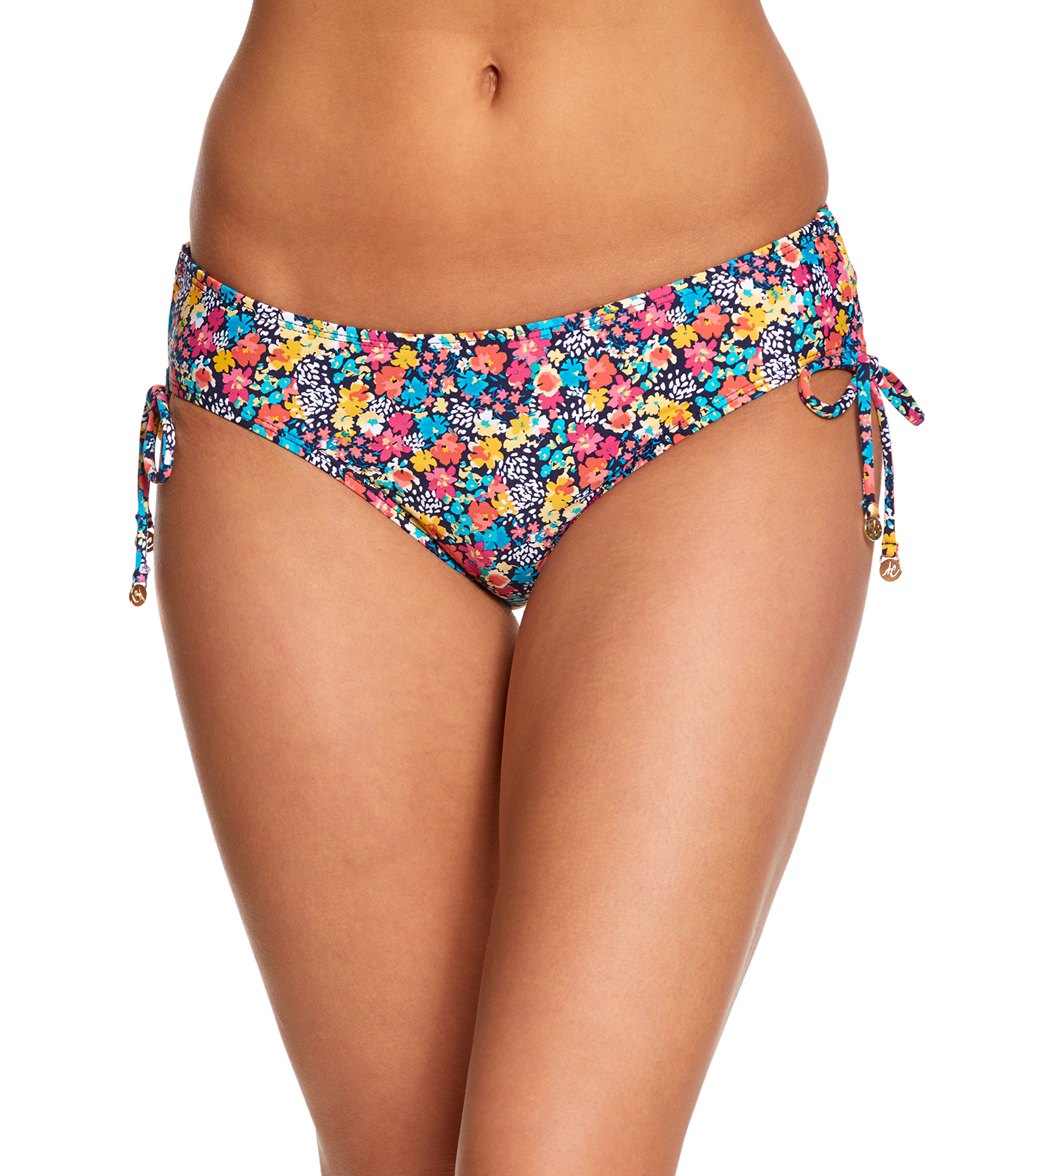 Anne Cole Budding Romance Alex Side Tie Bikini Bottom - Multi X-Small Nylon/Spandex - Swimoutlet.com